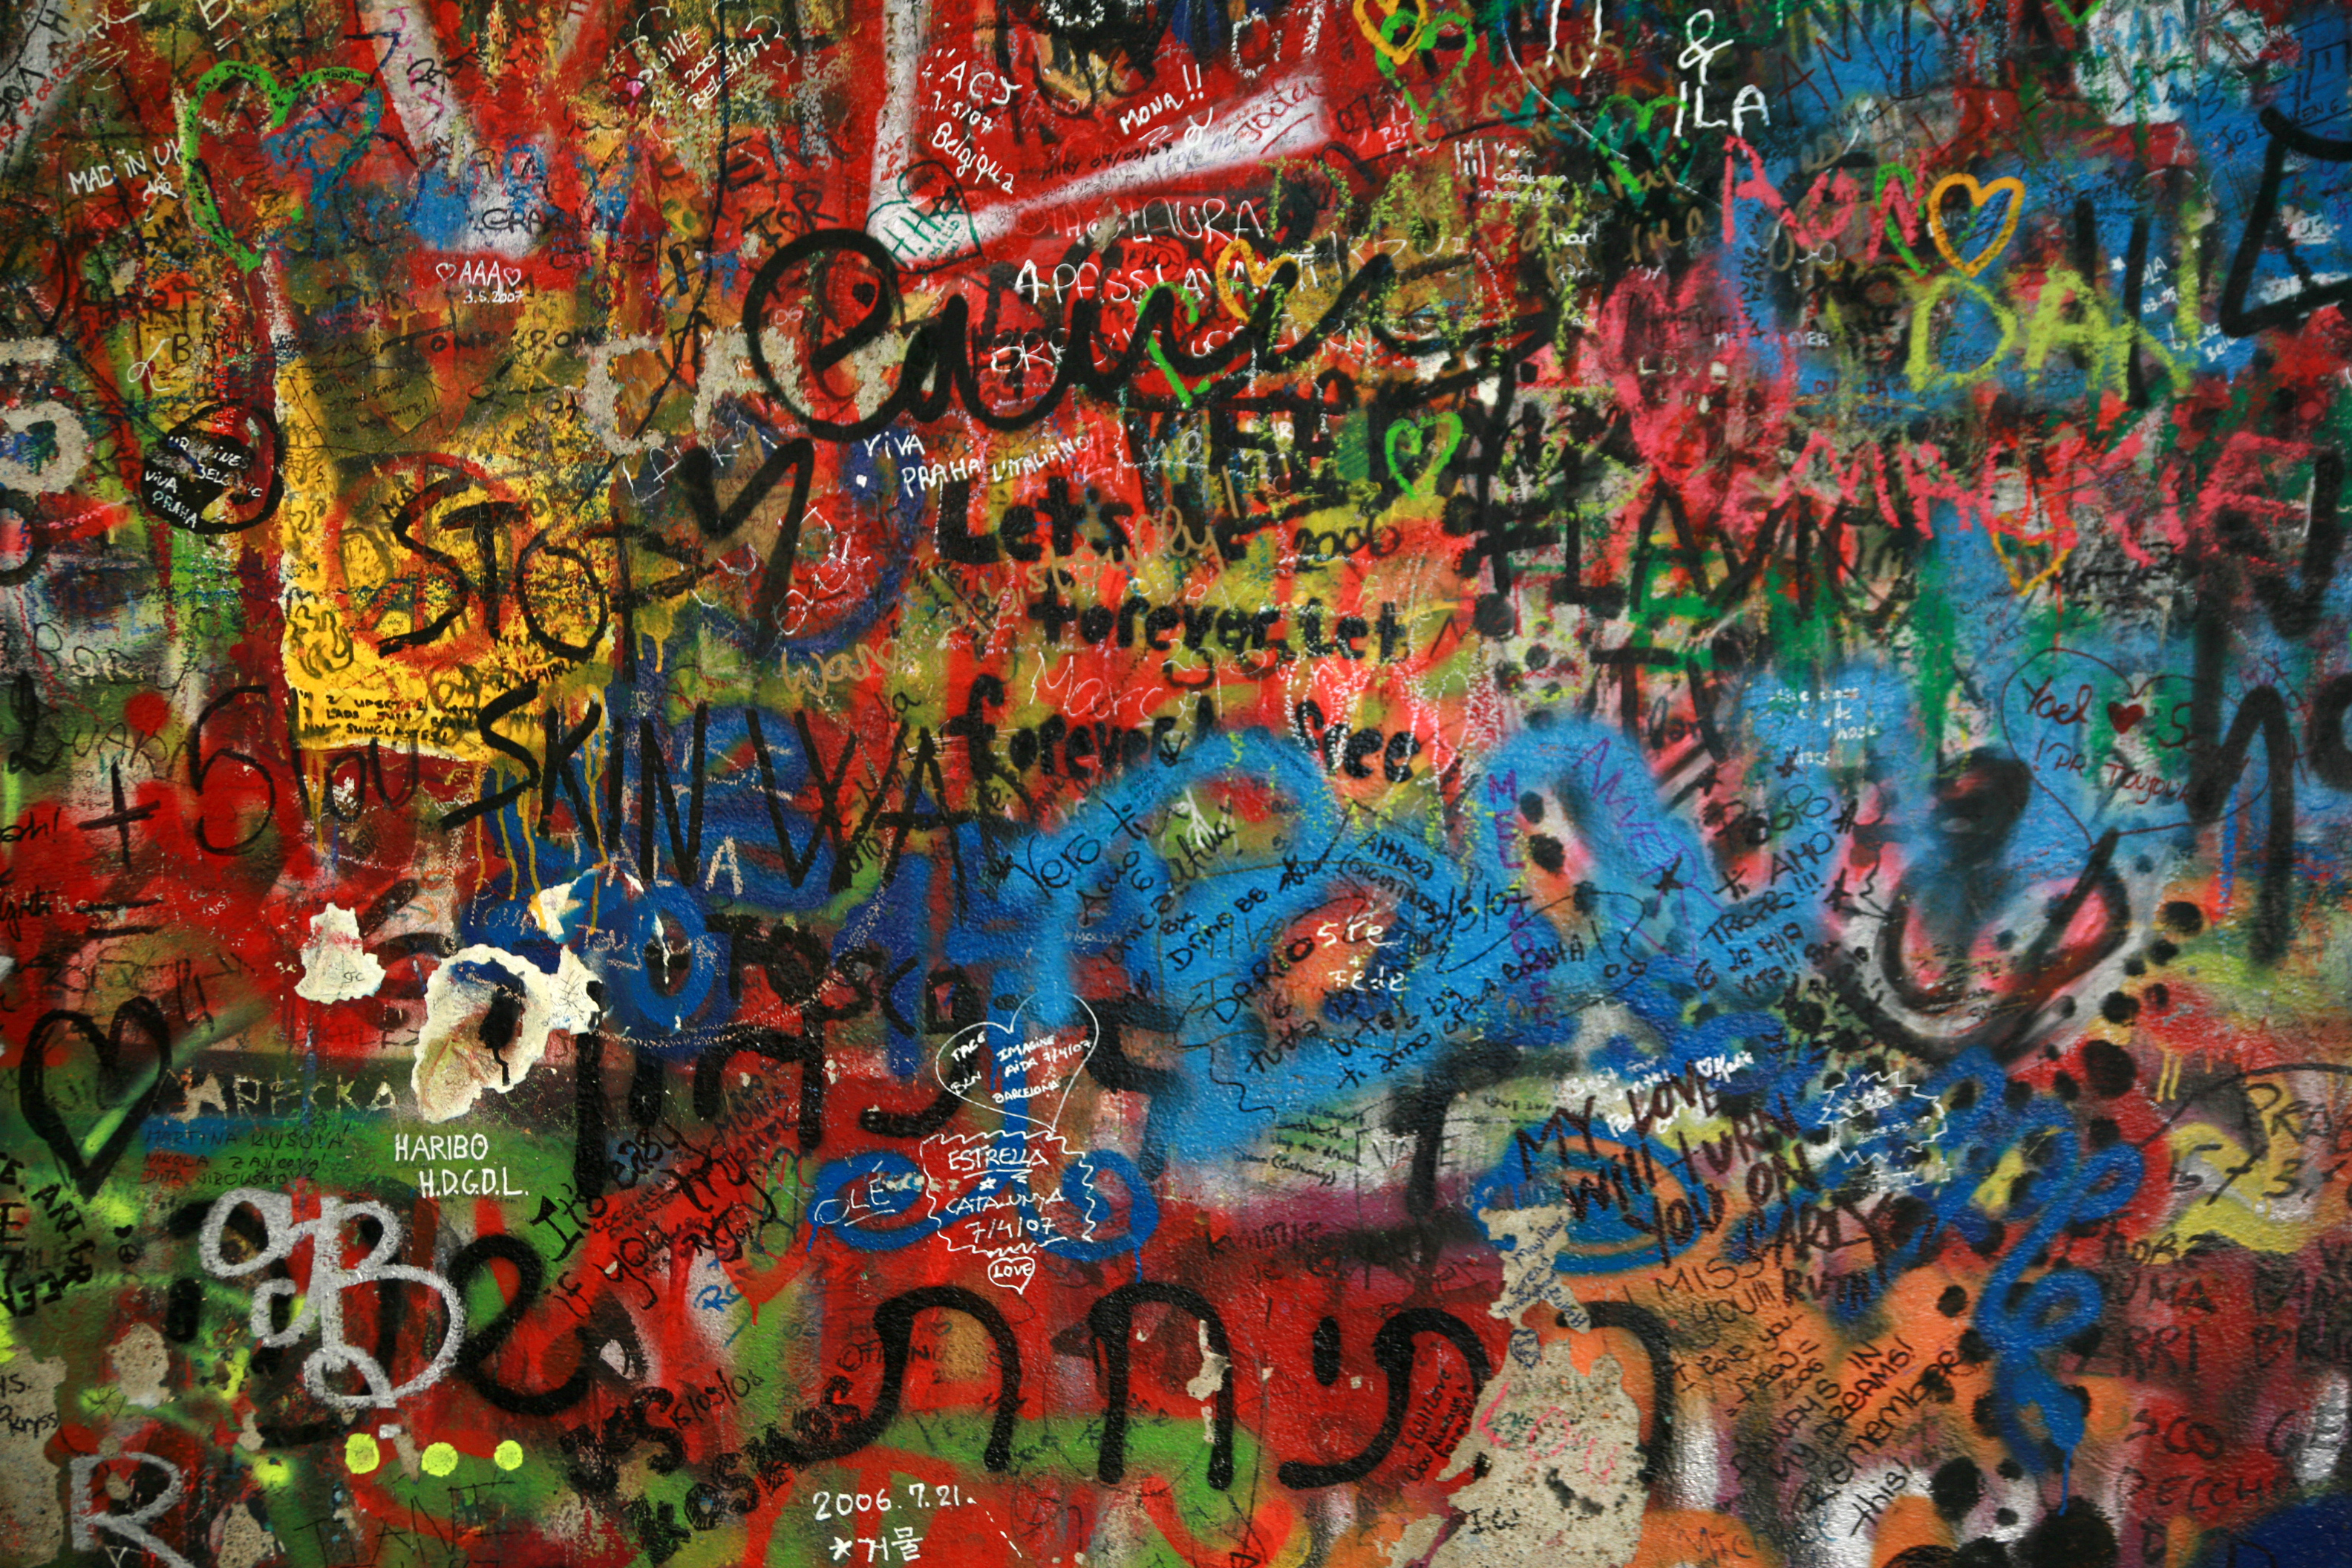 graffitiwall